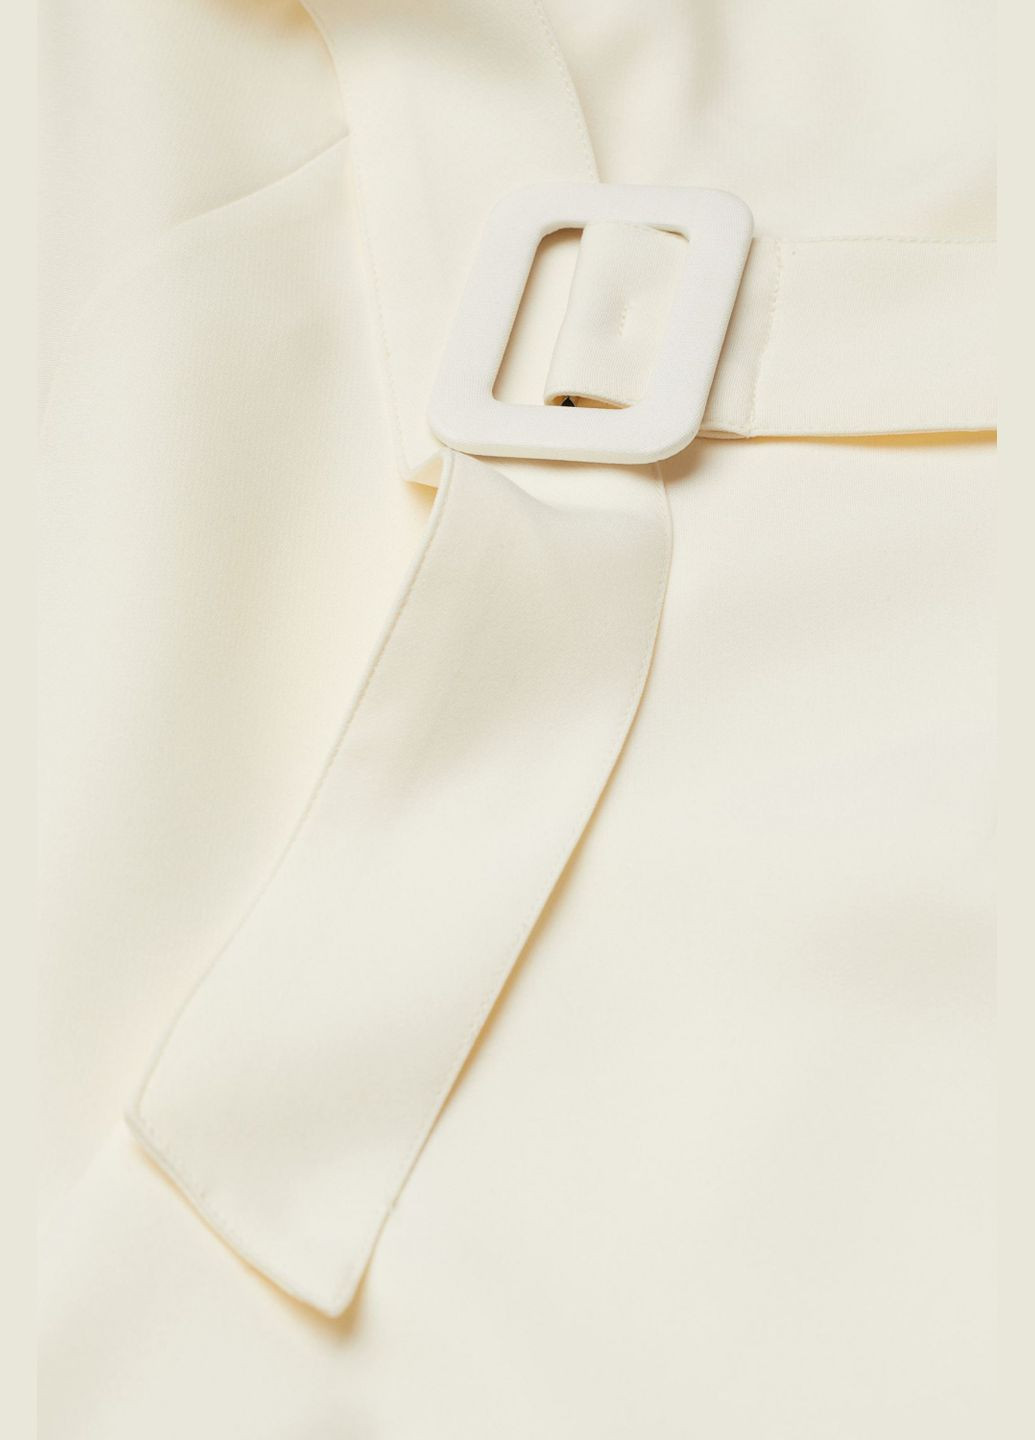 Комбинезон с поясом для женщины Divided 0889771-002 34(XS) H&M комбинезон-брюки однотонный бежевый деловой, повседневный, кэжуал, вечерний полиэстер